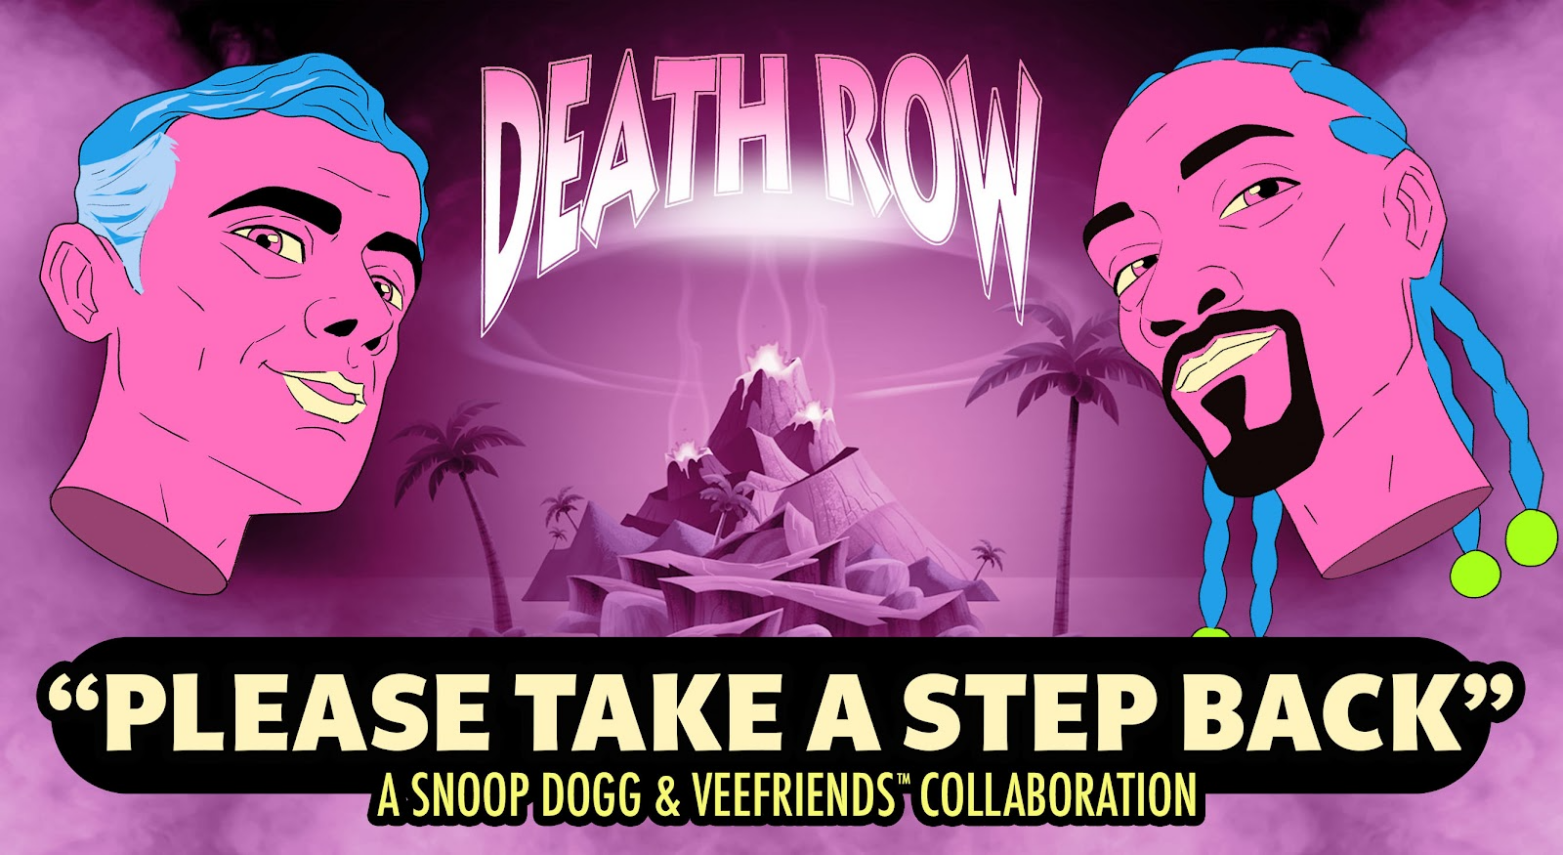 Snoop Dogg partnered with VeeFriends.